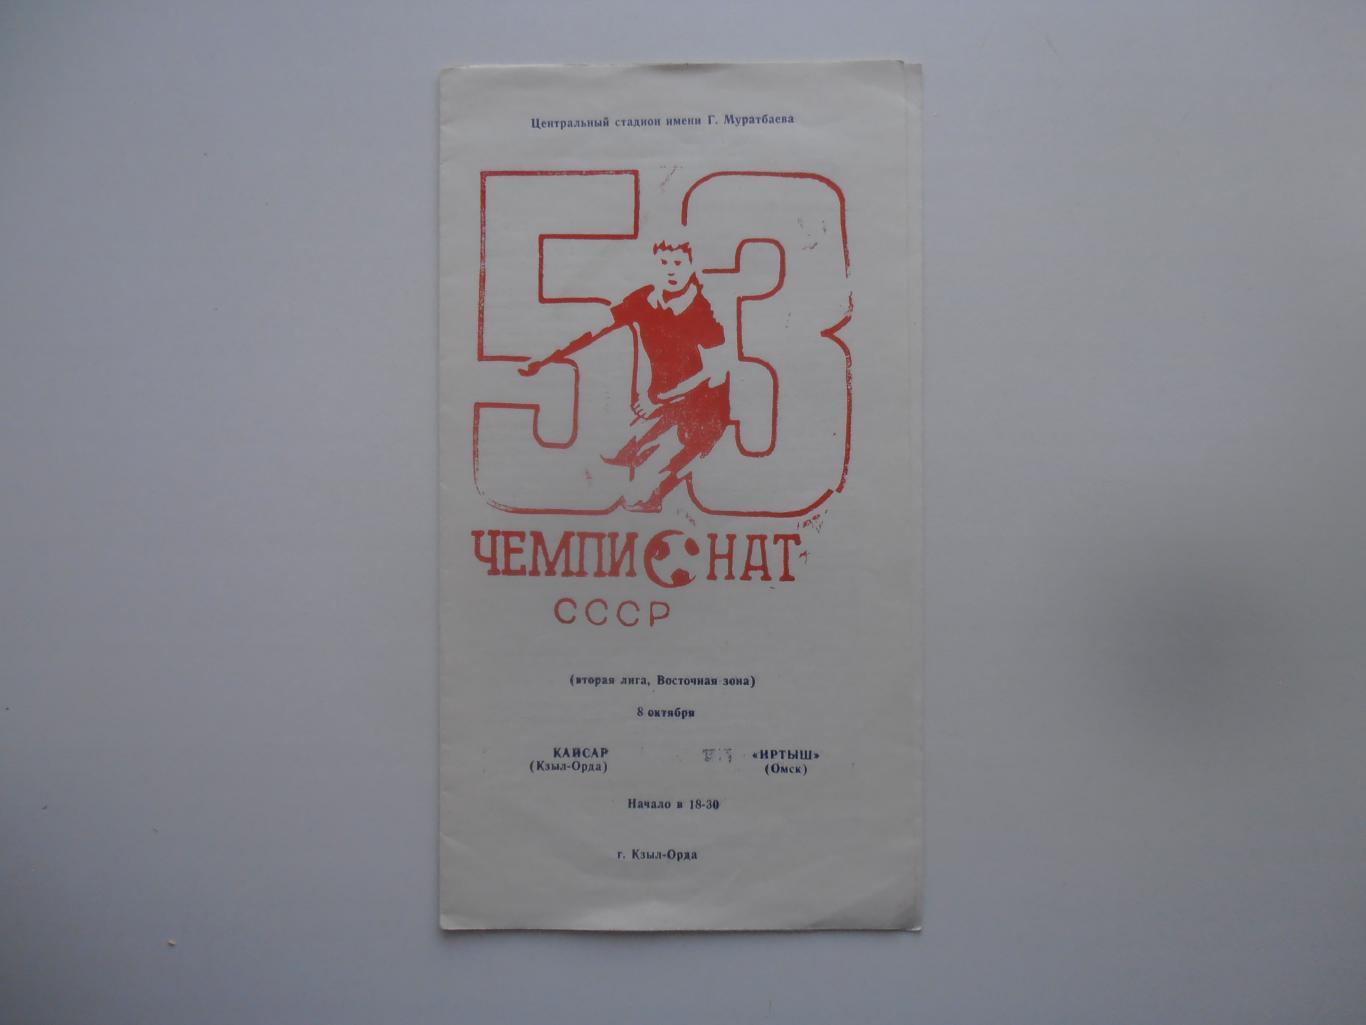 Кайсар Кзыл-Орда-Иртыш Омск 8 октября 1990